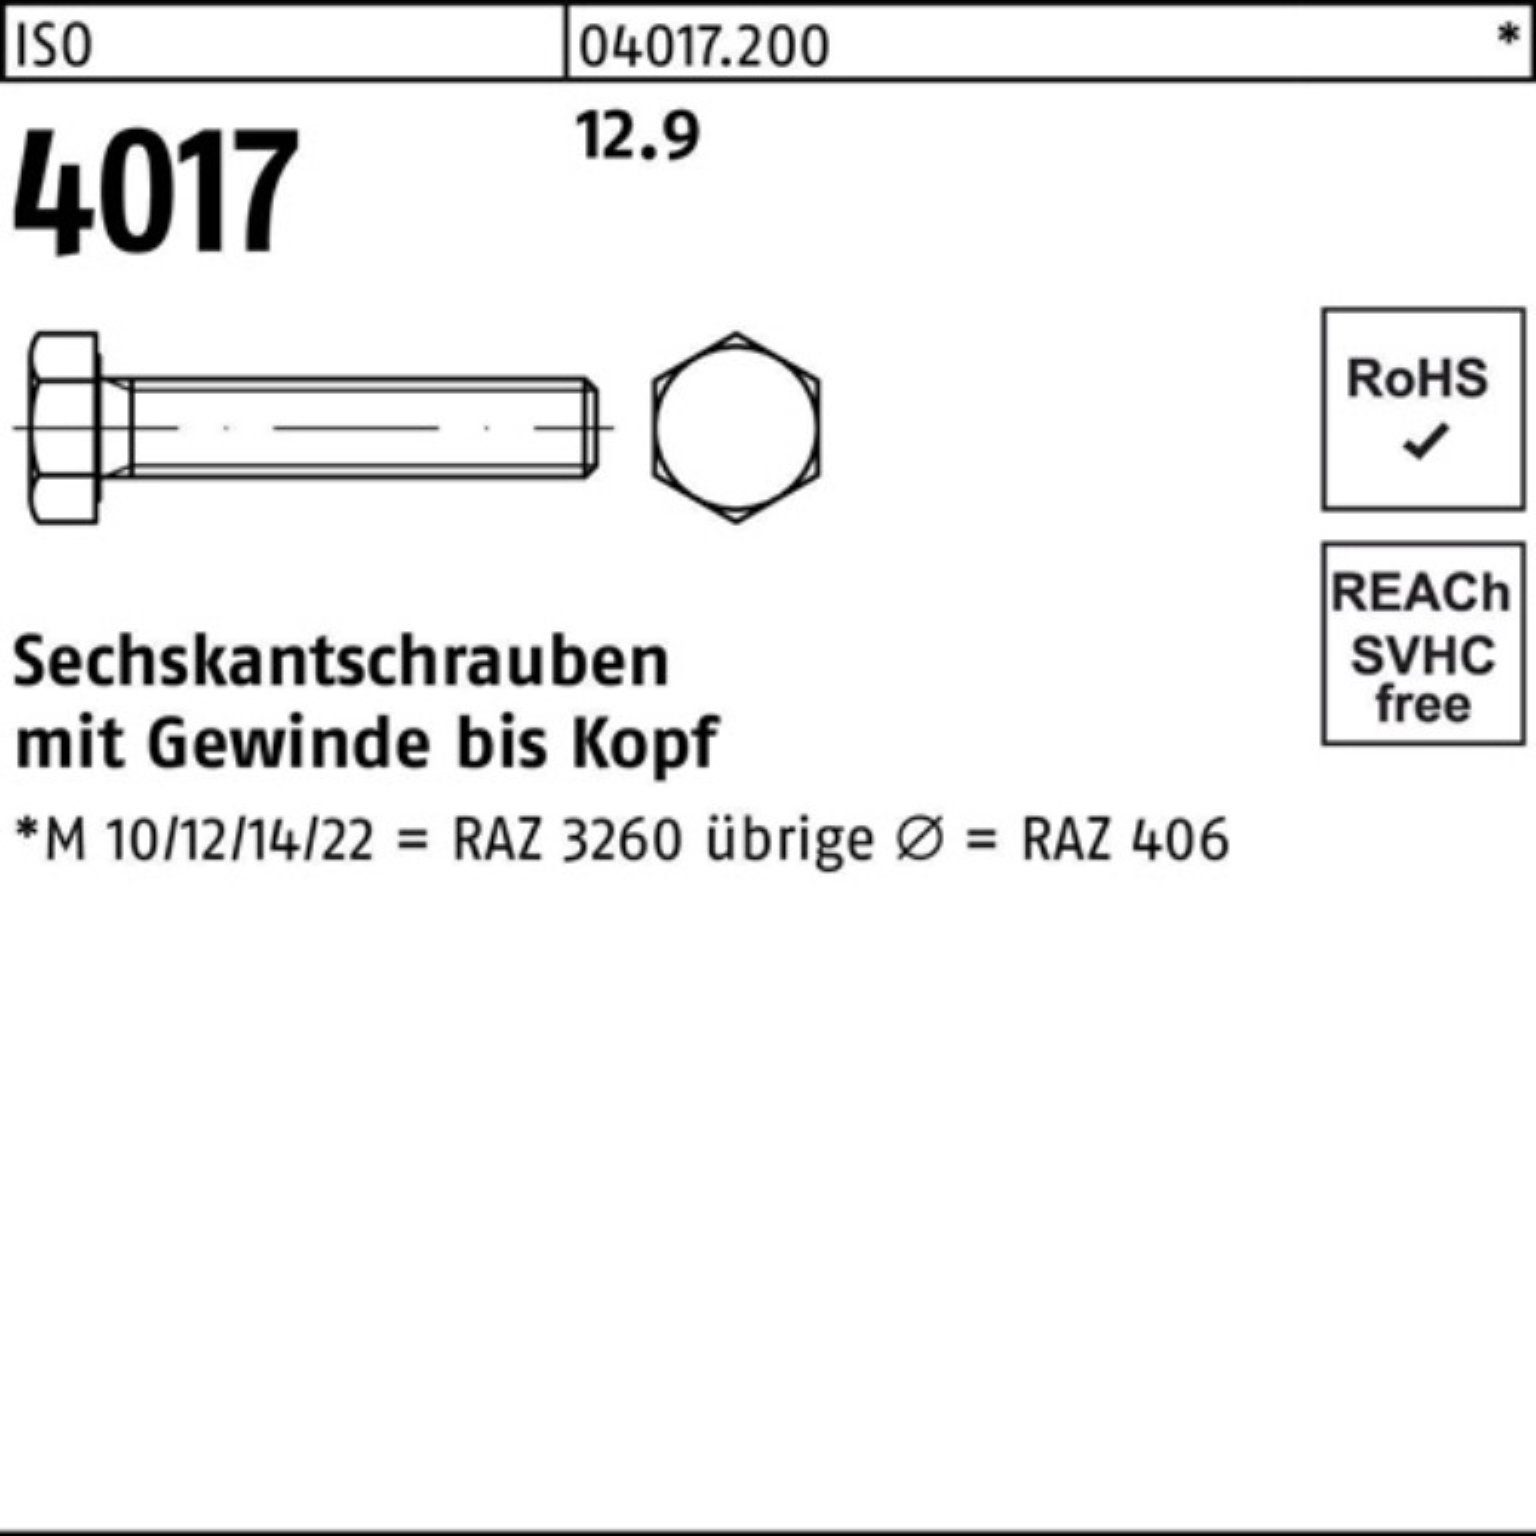 Sechskantschraube ISO ISO Bufab 12.9 35 Sechskantschraube Stück M14x 4017 100 100er 4 VG Pack